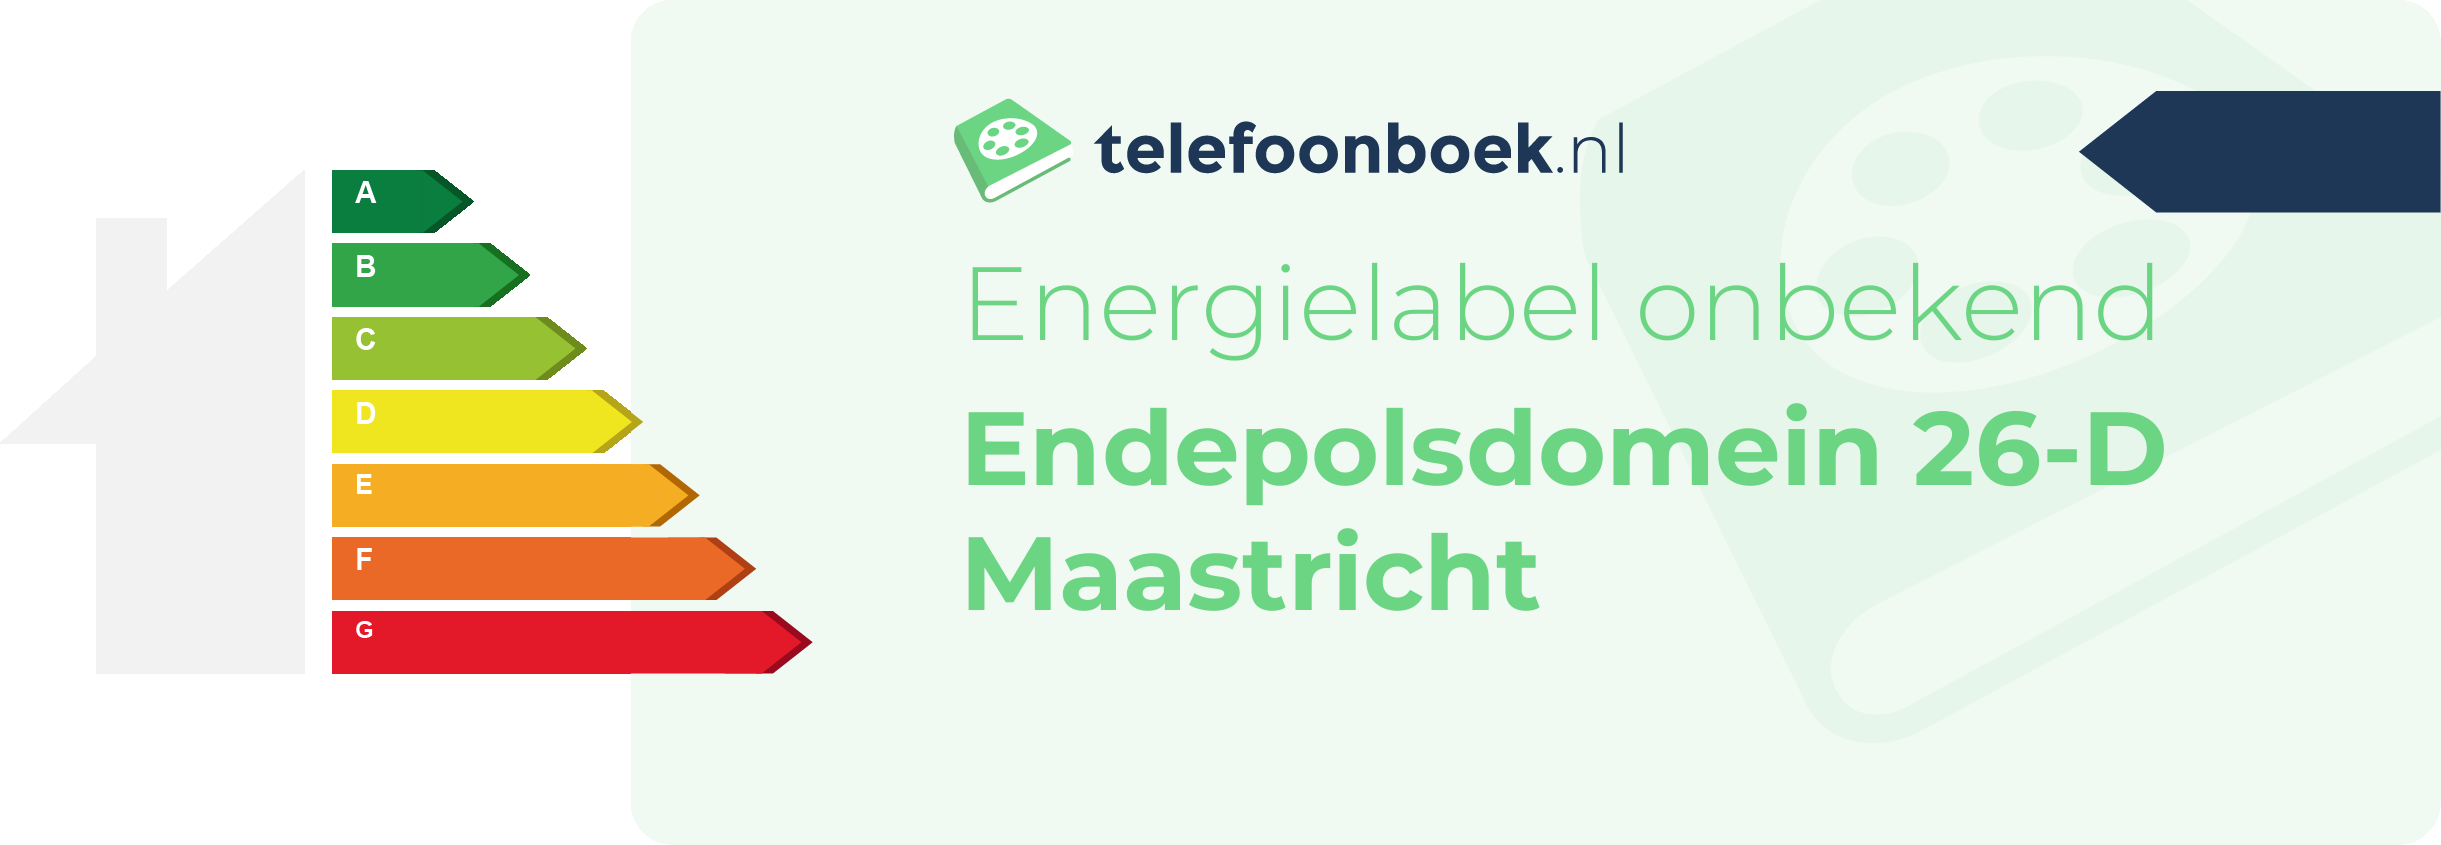 Energielabel Endepolsdomein 26-D Maastricht